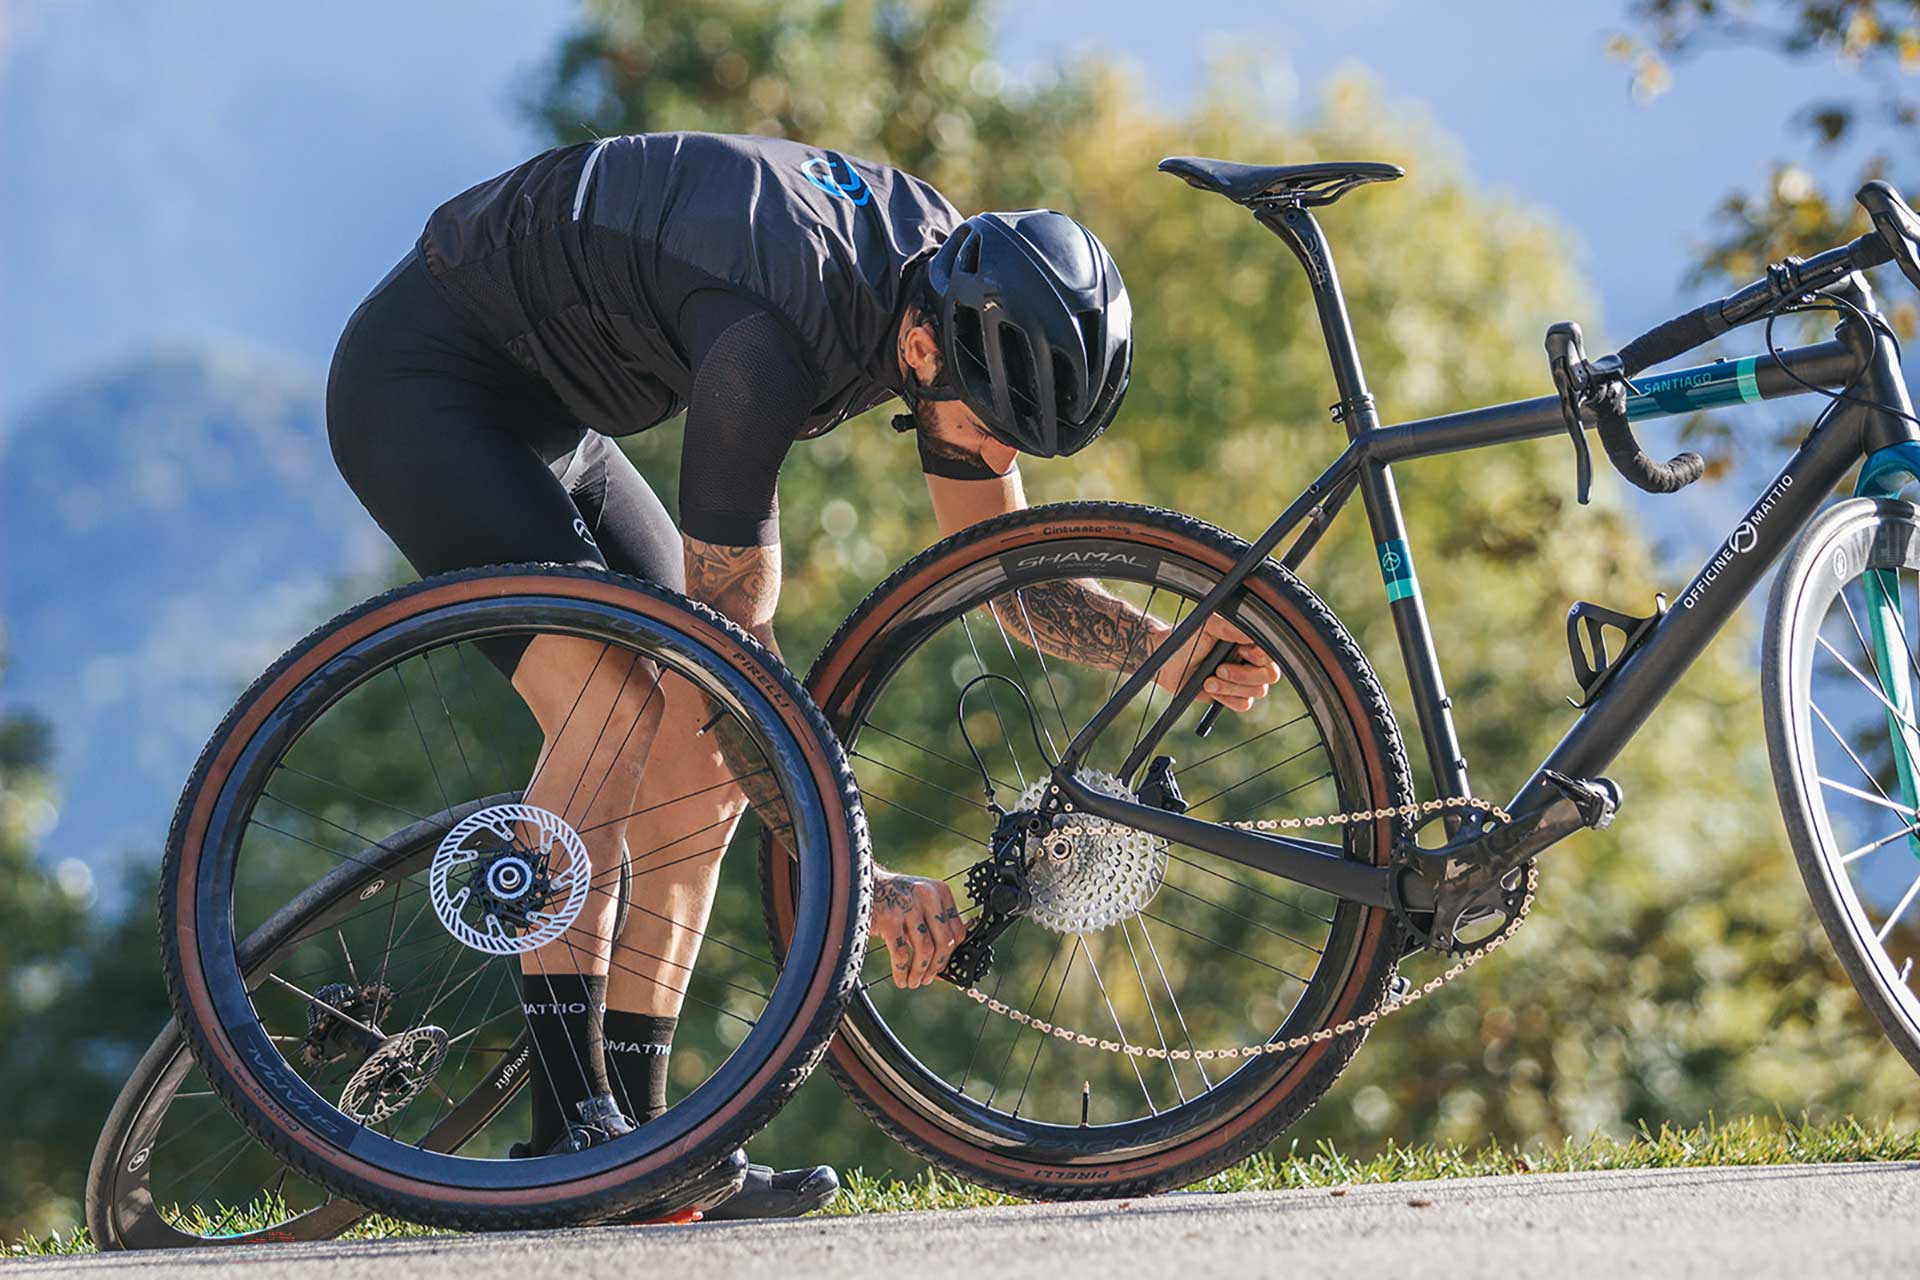 Bicicletta Officine Mattio modello SANTIAGO C colori nero, blu e azzurro, super leggera e maneggevole, in fibra di carbonio produzione made in italy ambientata 06